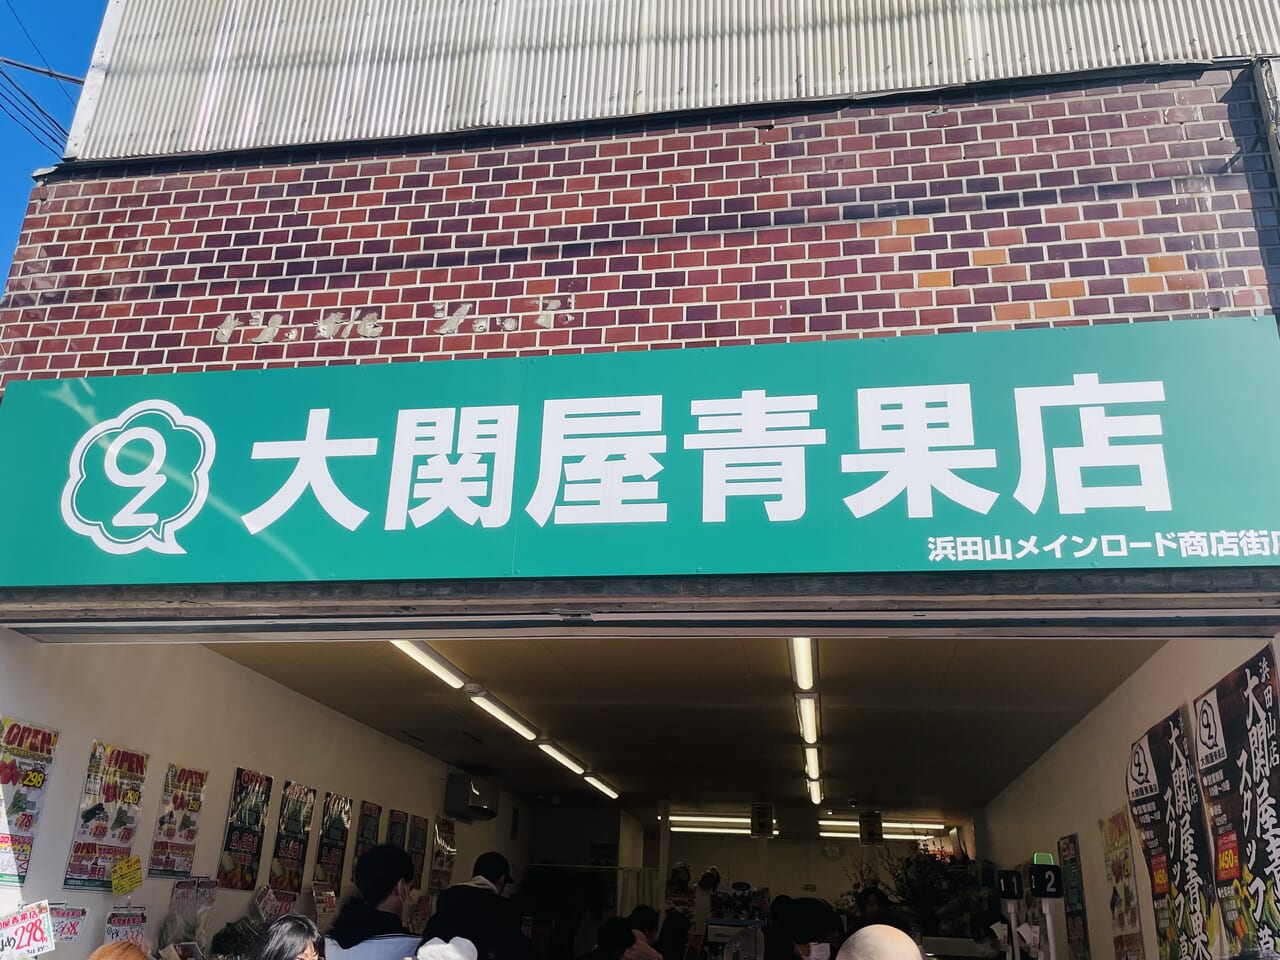 大関屋青果店浜田山メインロード商店街店看板